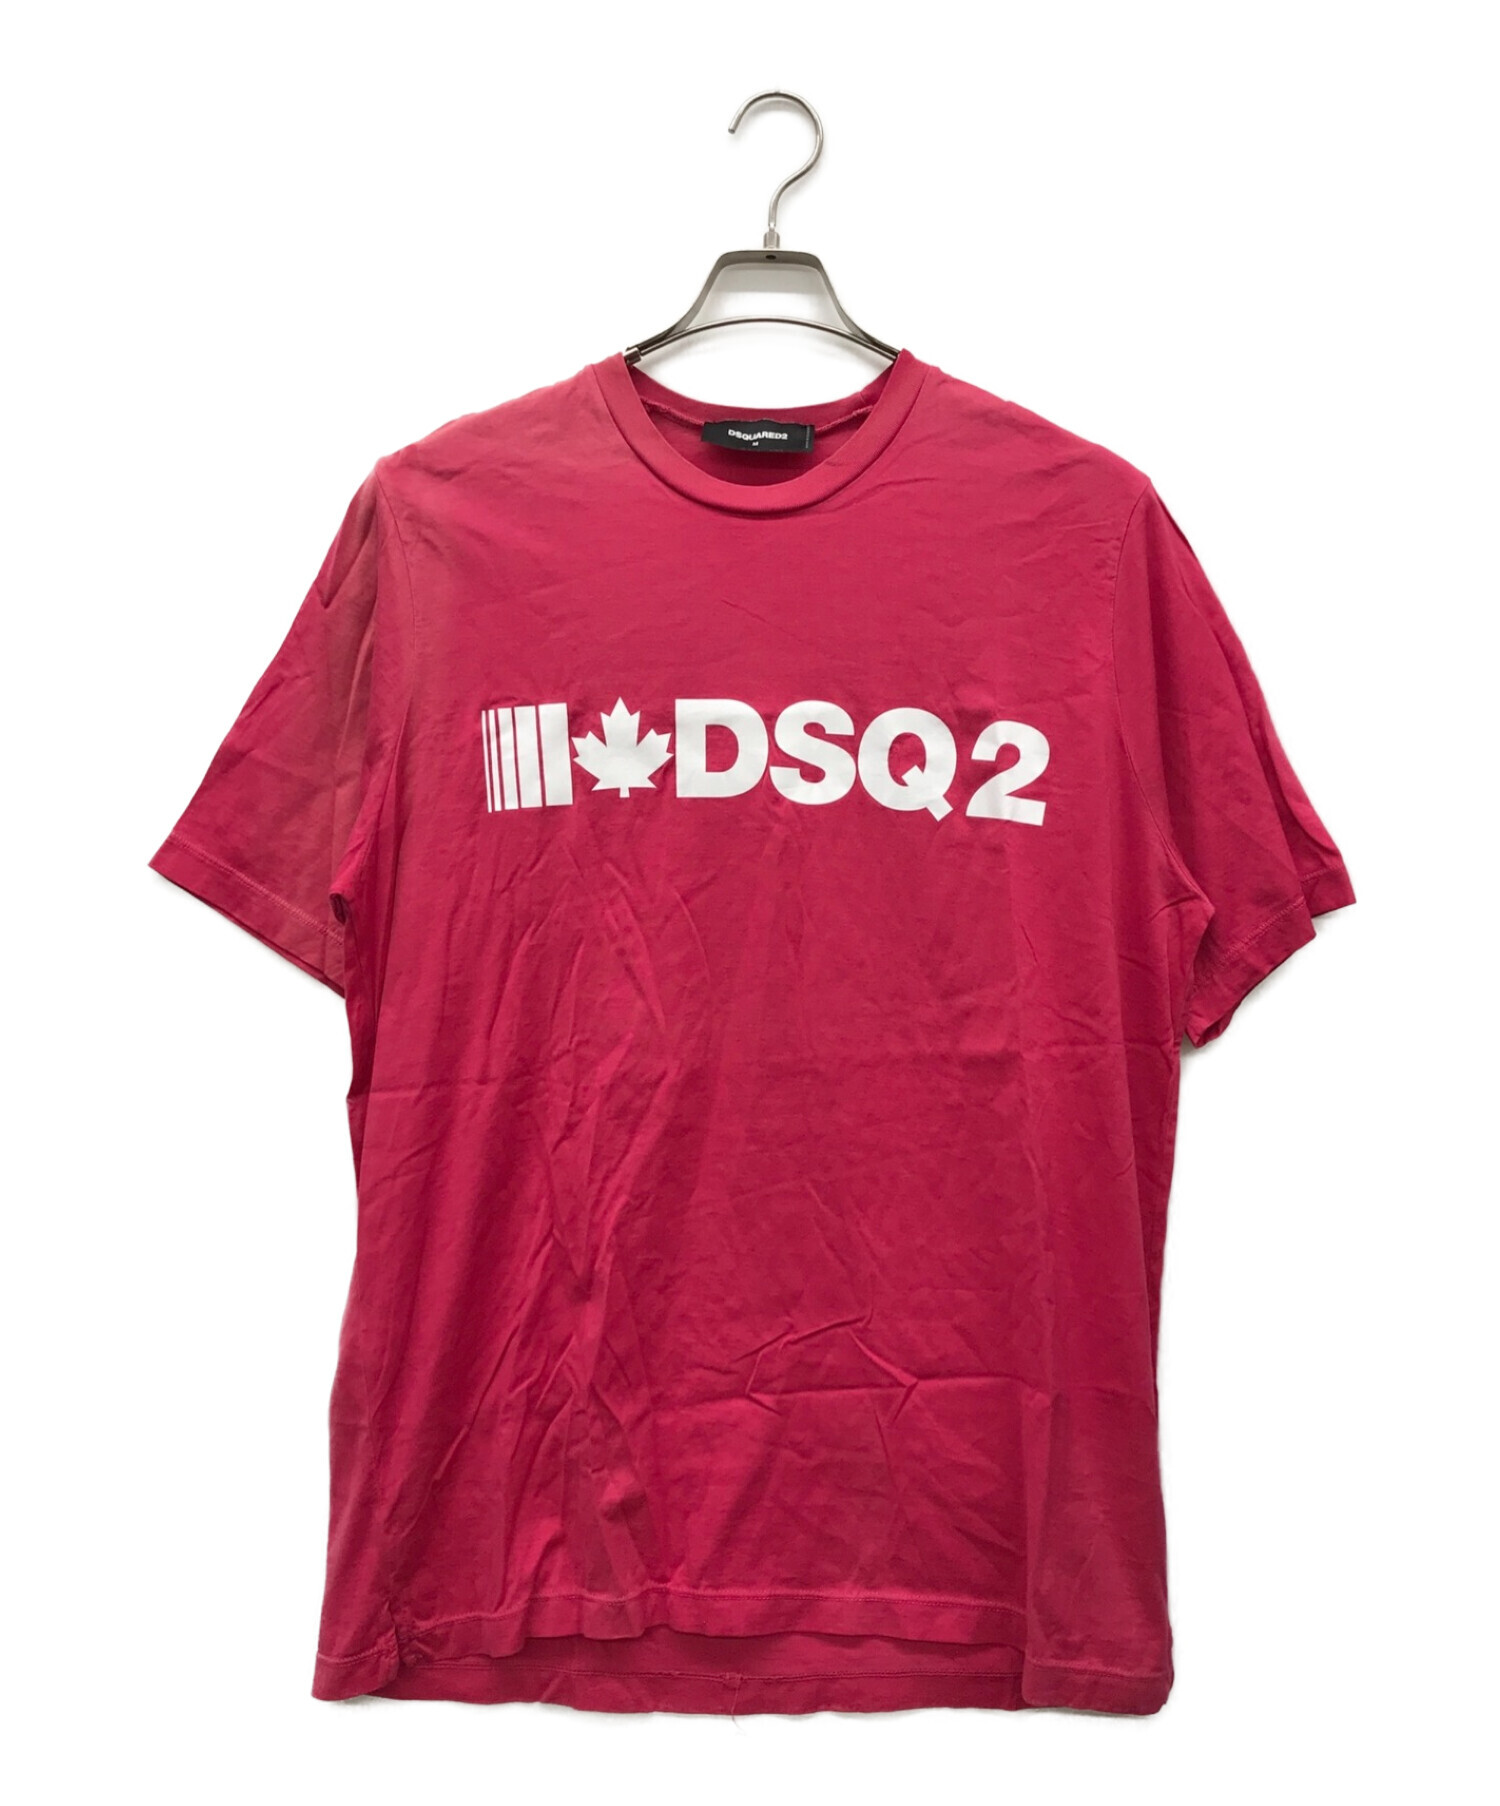 ファッション定価42900円 DSQUARED2 Tシャツ 犬 新品未使用タグ付き 3468